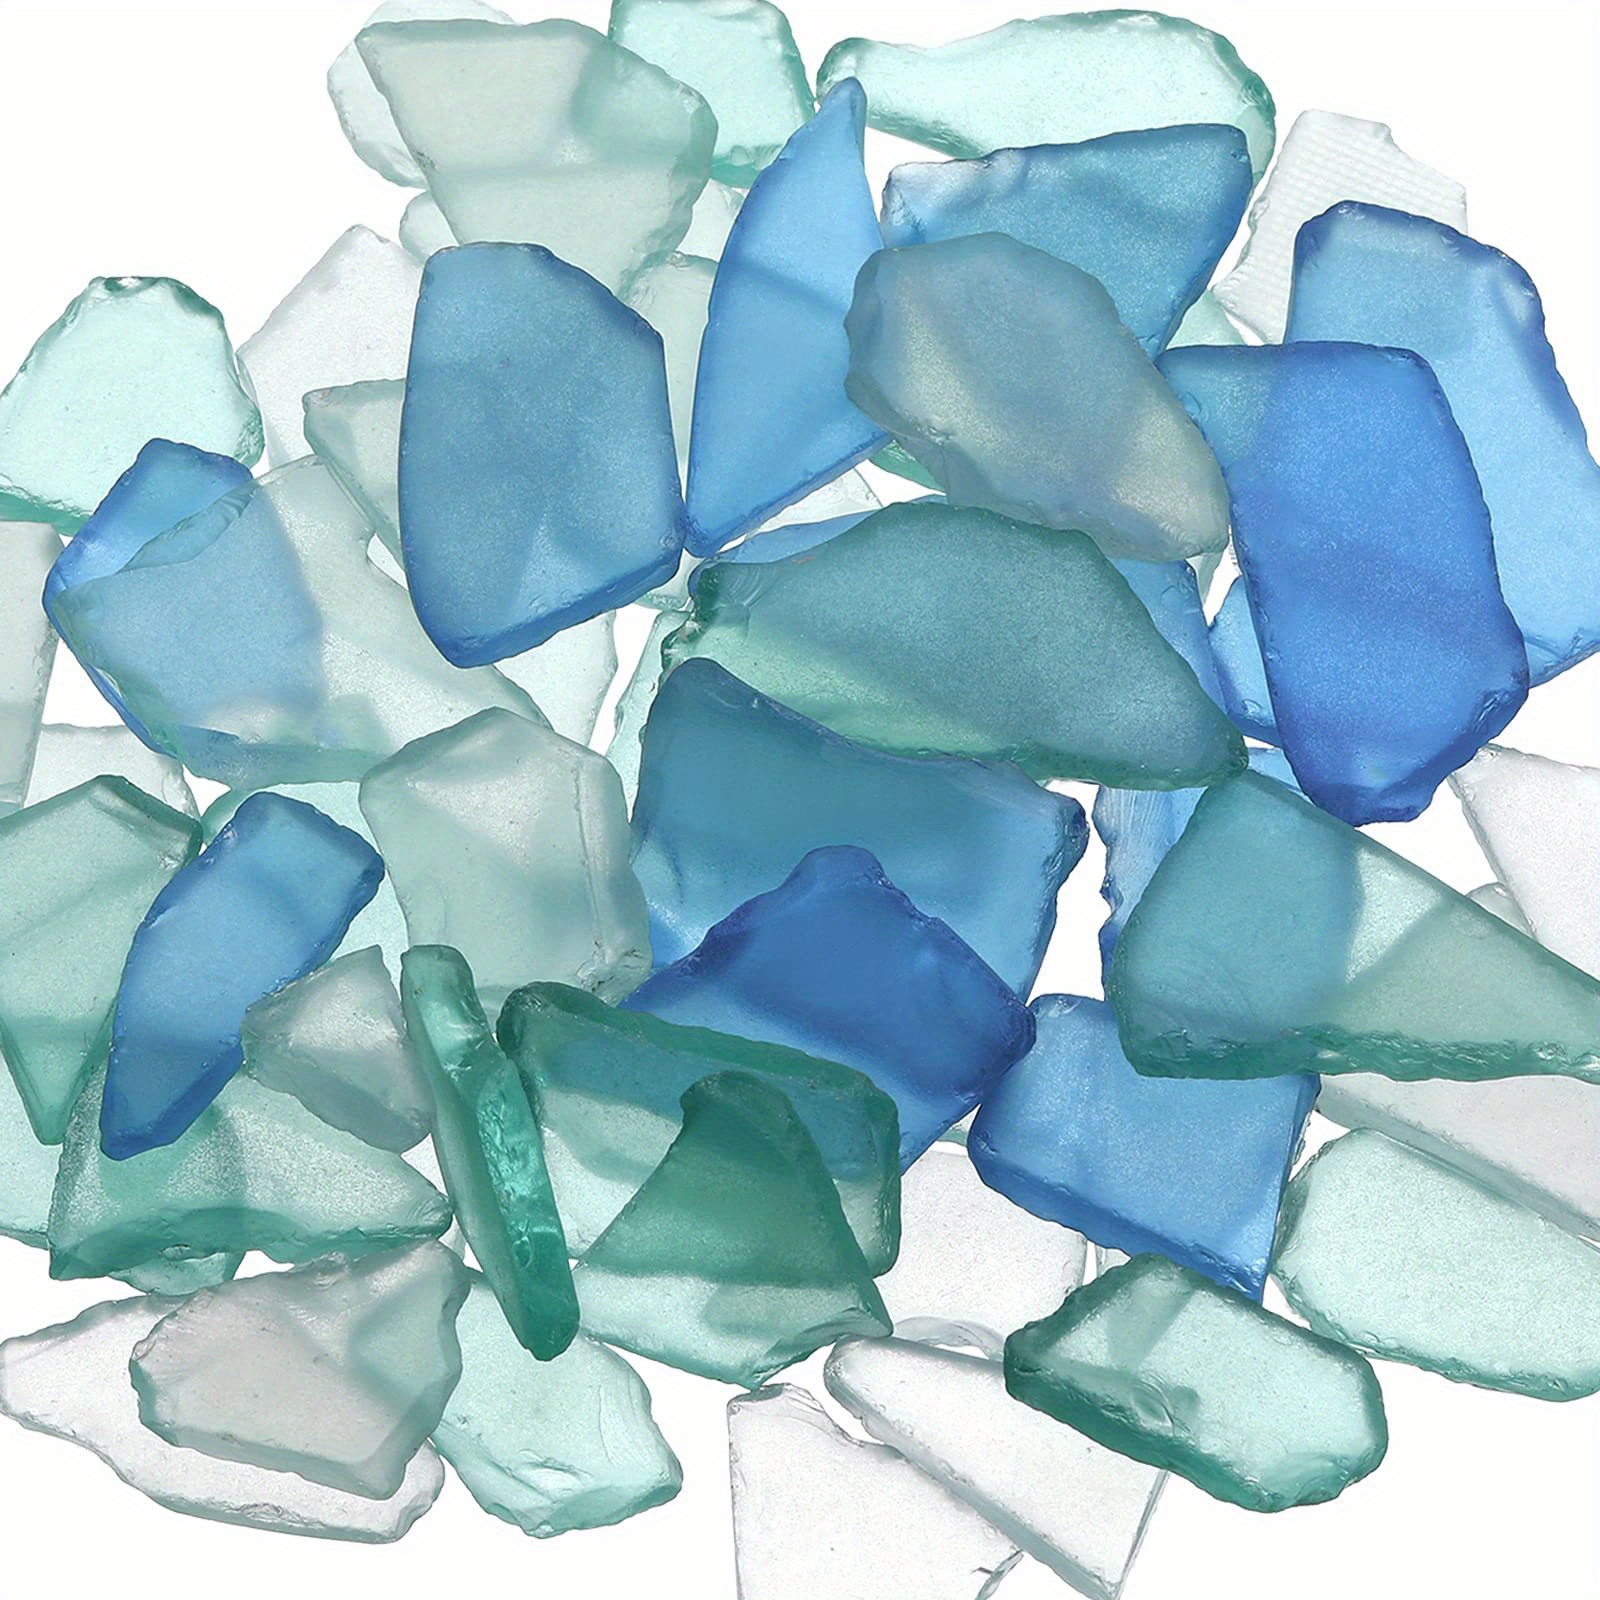 Sea Glass -11oz Assorted Mix Tumbled Sea Glass Decor - Bulk Sea